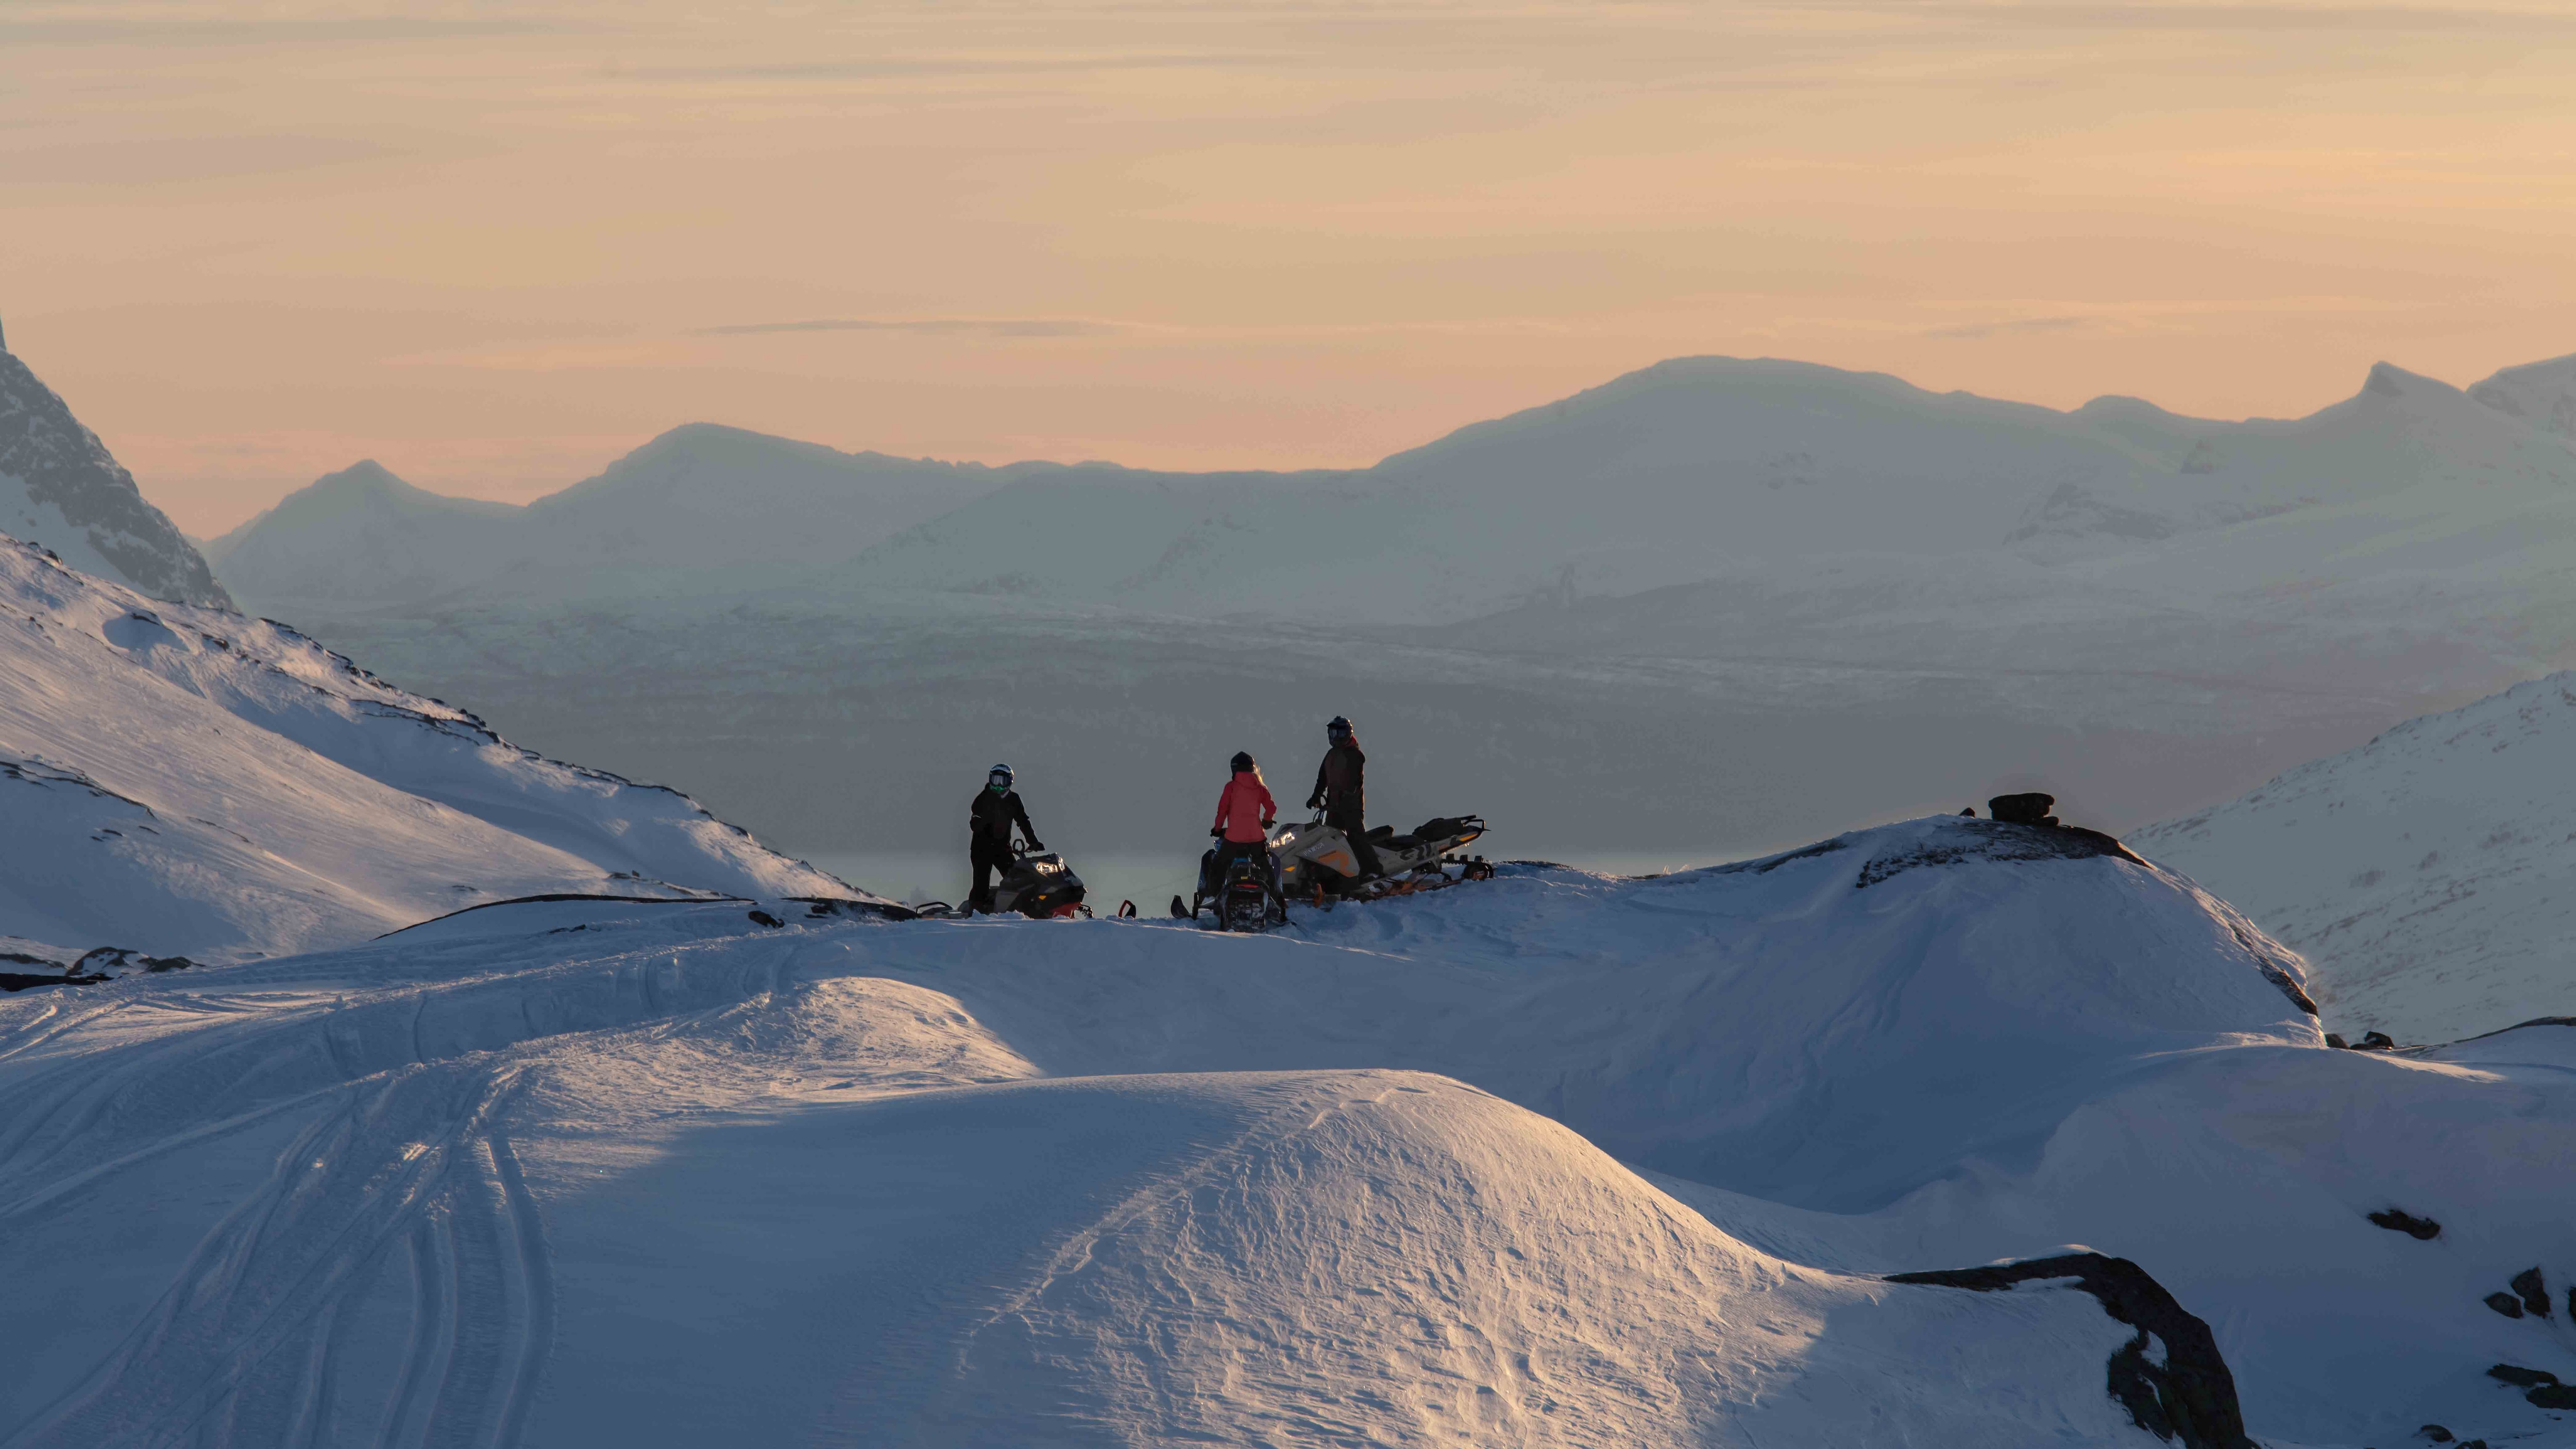 Ski-Doo snöskotrar parkerade i fjällen i solnedgång